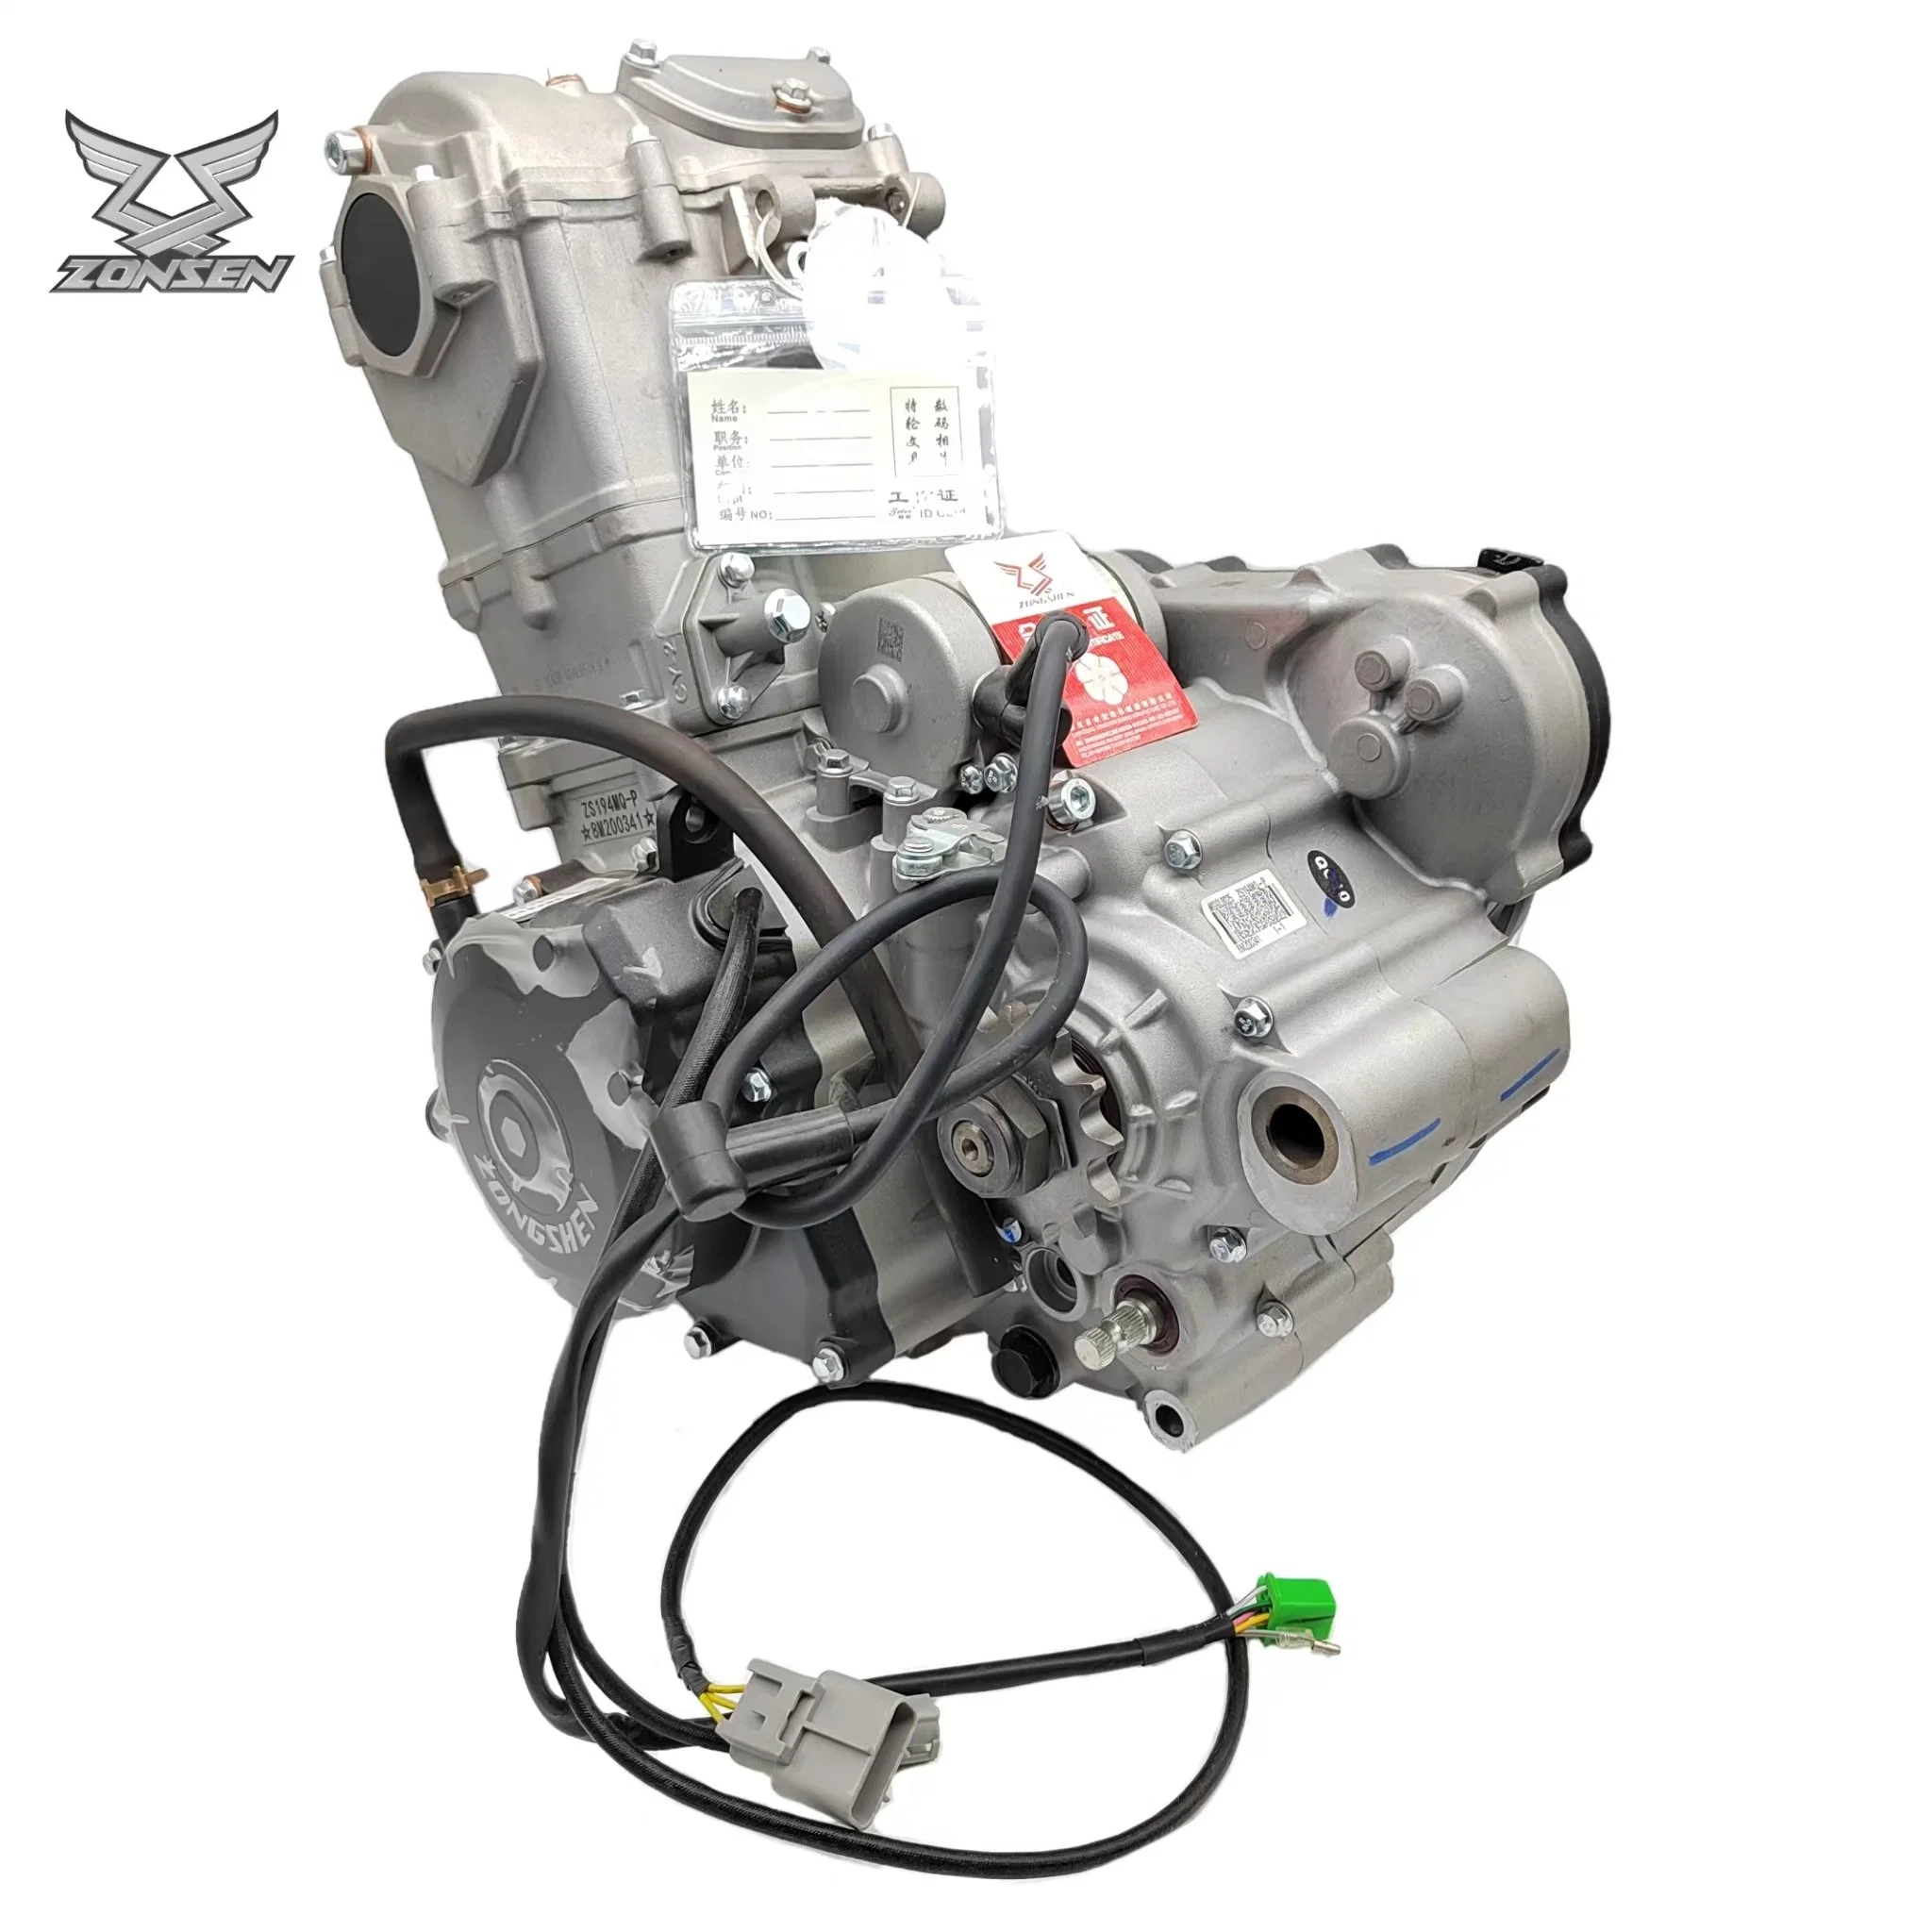 OEM Zongshen Моторные запчасти Nc450 EFI Двигатель большой производительности Подходит для мотоцикла Honda Moto RX4 Ducati